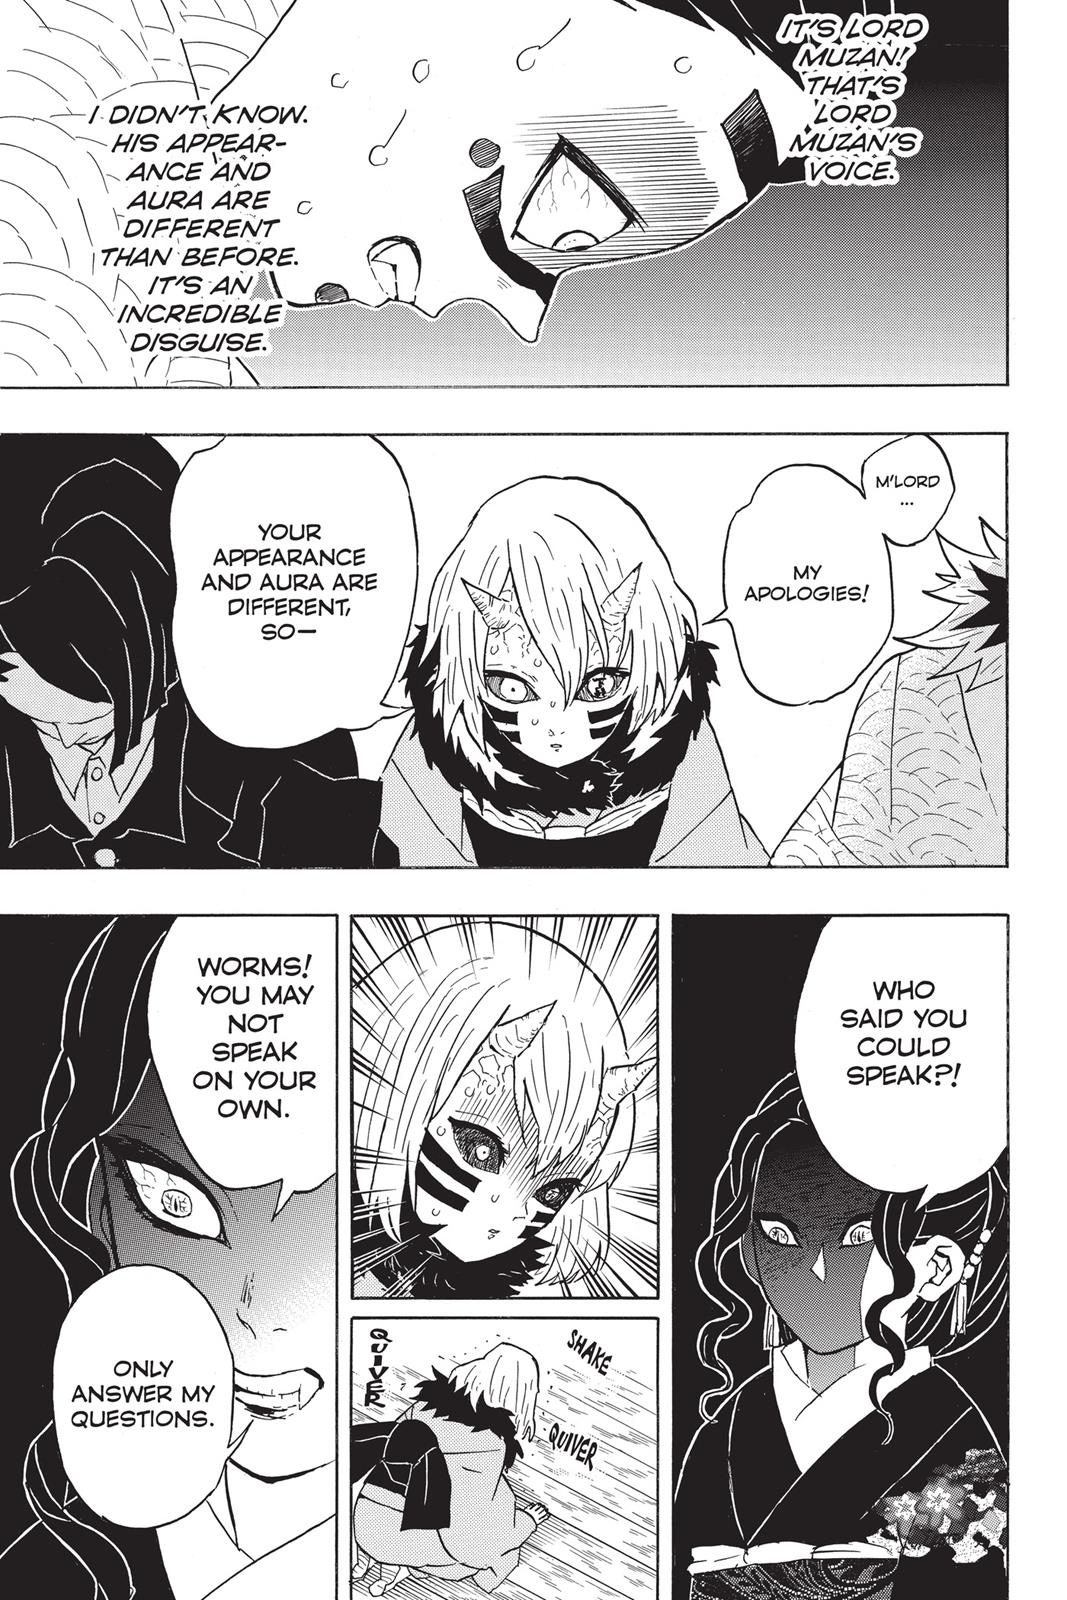 Demon Slayer Manga Manga Chapter - 51 - image 11